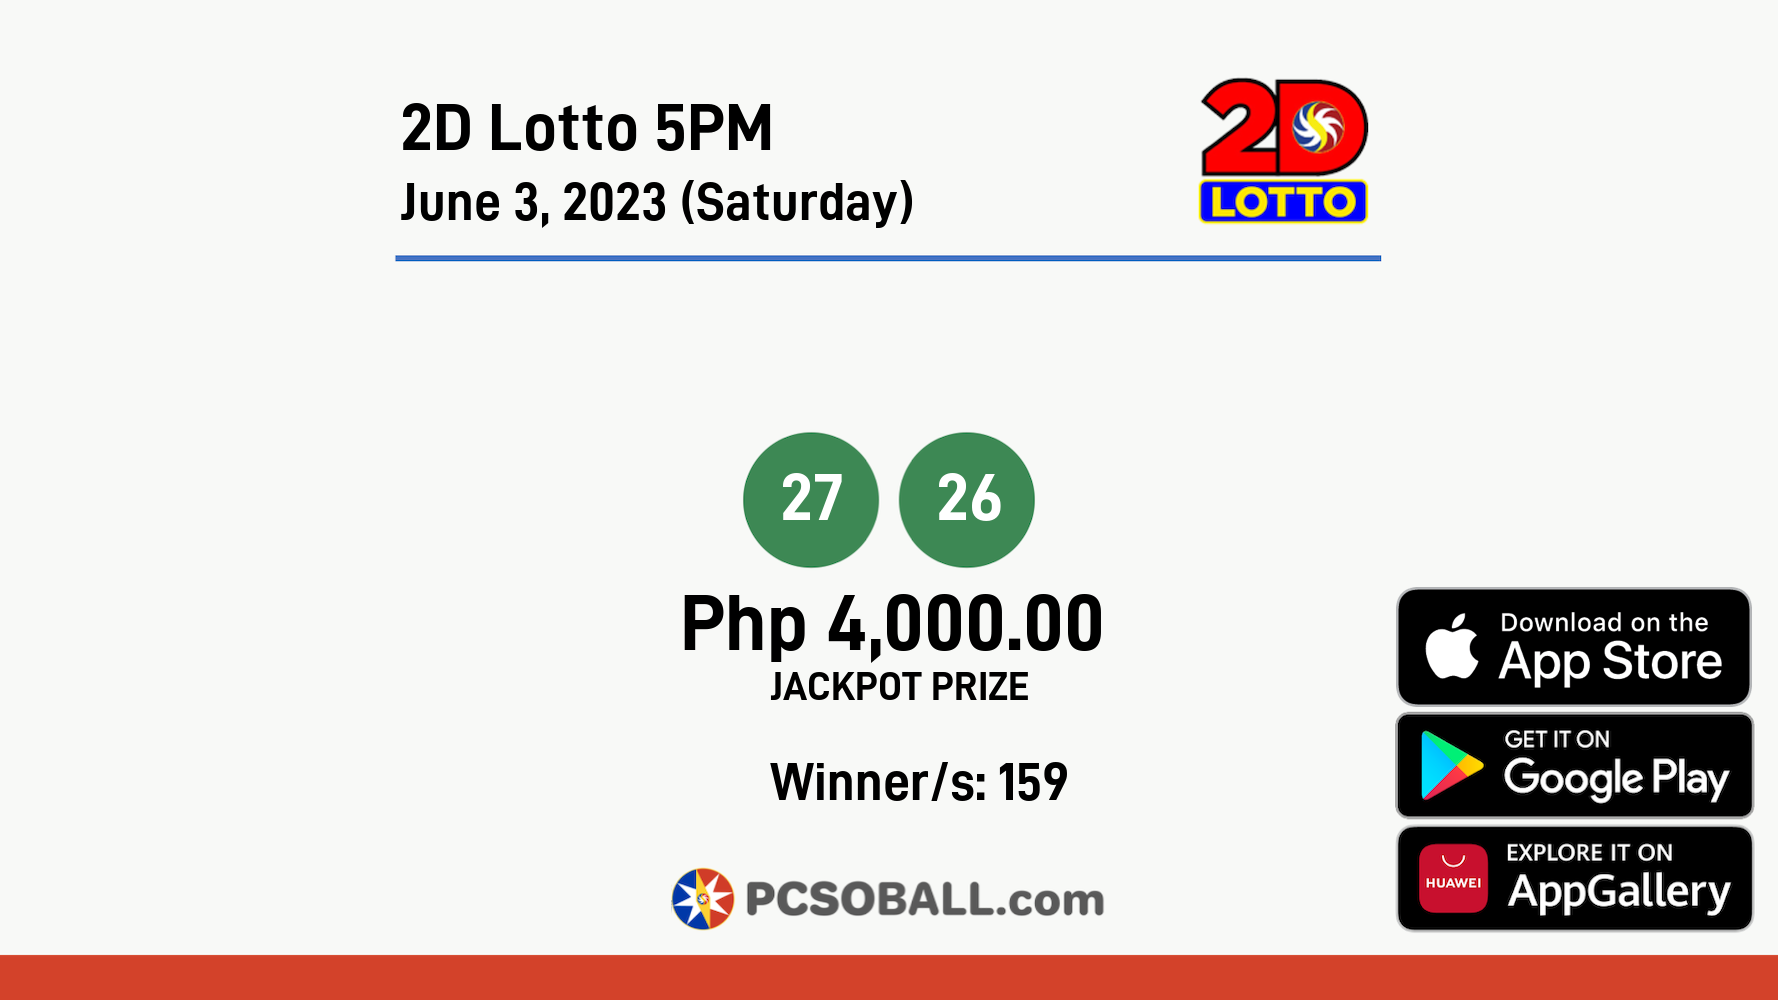 2D Lotto 5PM June 3, 2023 (Saturday) Result